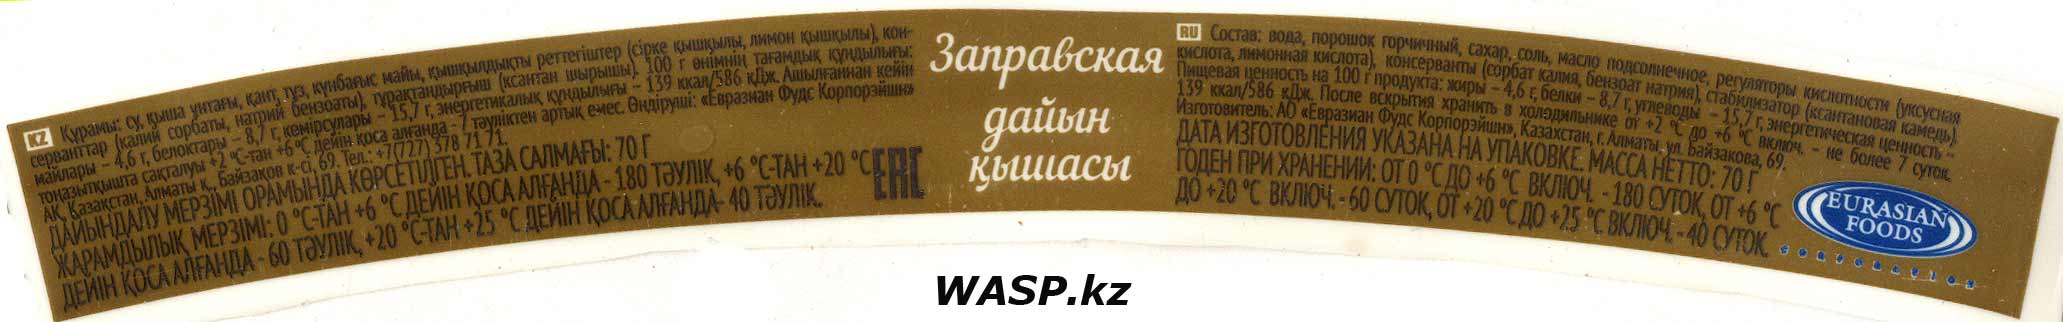 Этикетка горчицы 3 желания заправская из Казахстана, состав, где купить